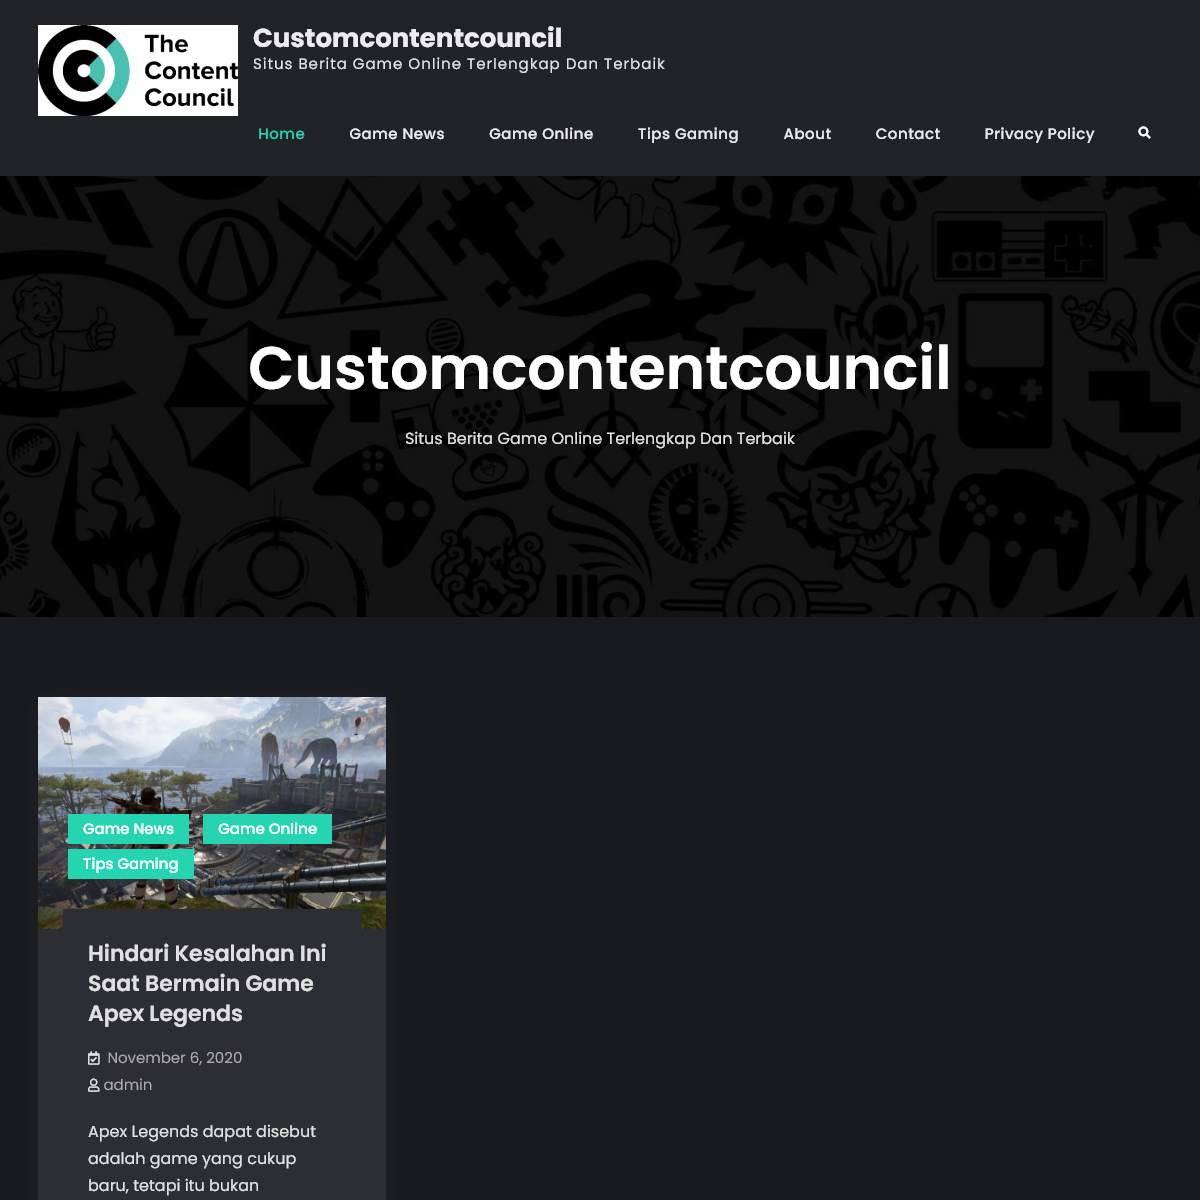 Customcontentcouncil - Situs Berita Game Online Terlengkap Dan Terbaik